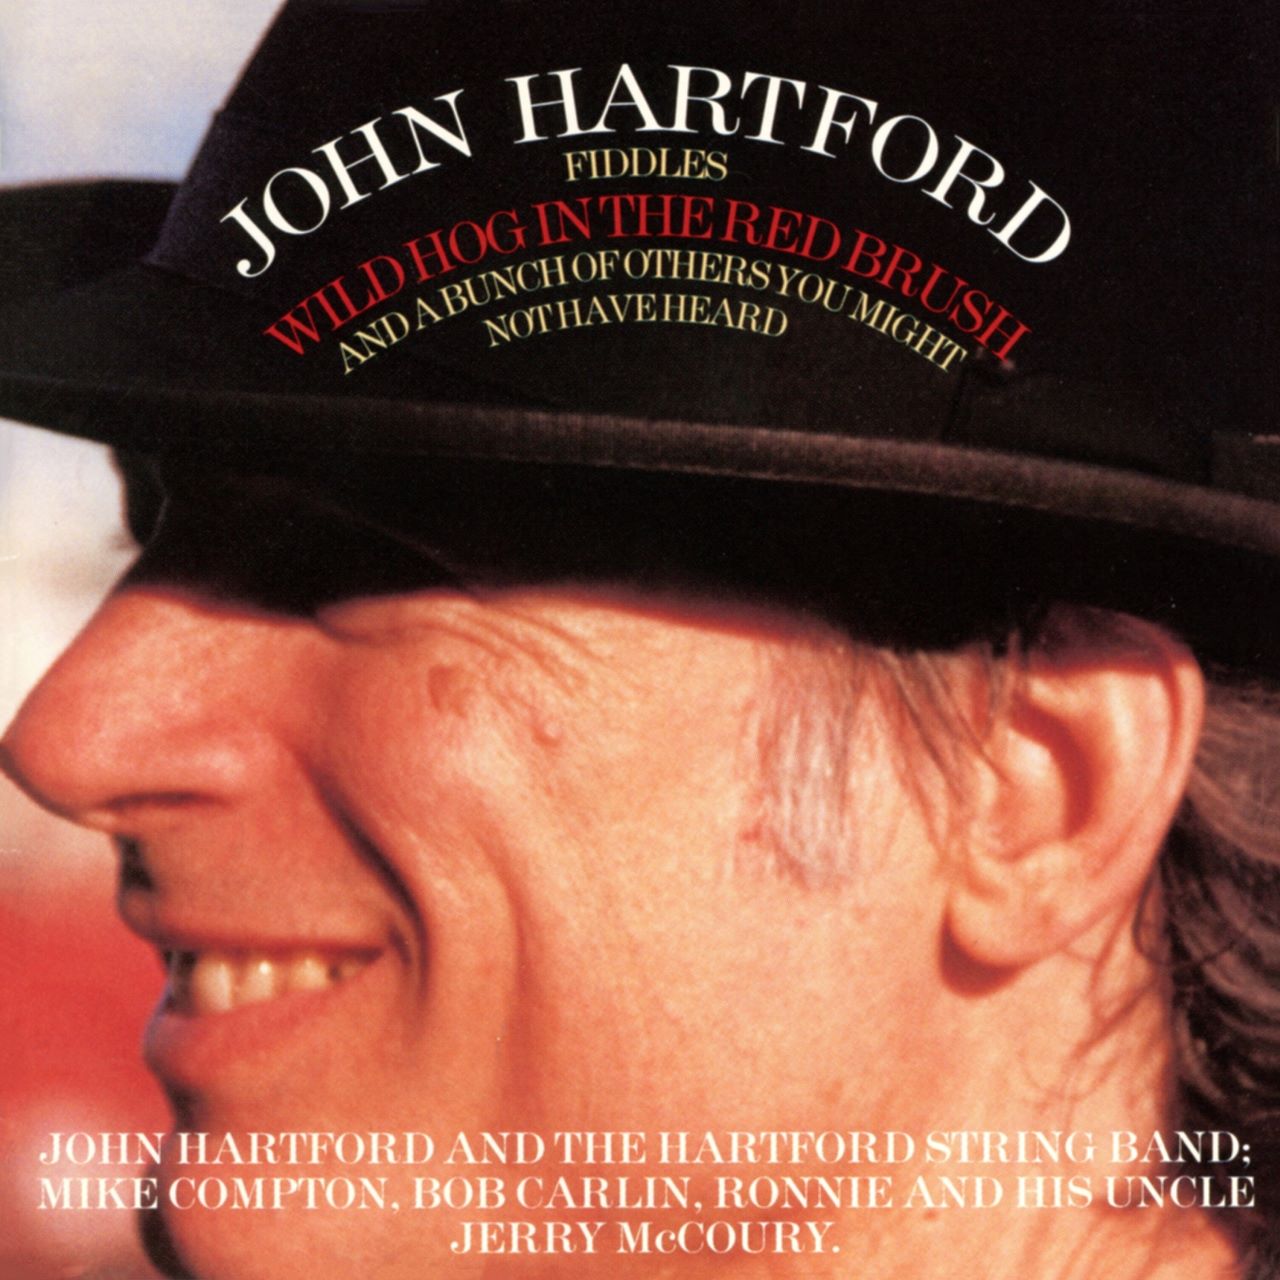 John Hartford - Wild Hog In The Red Brush cover album